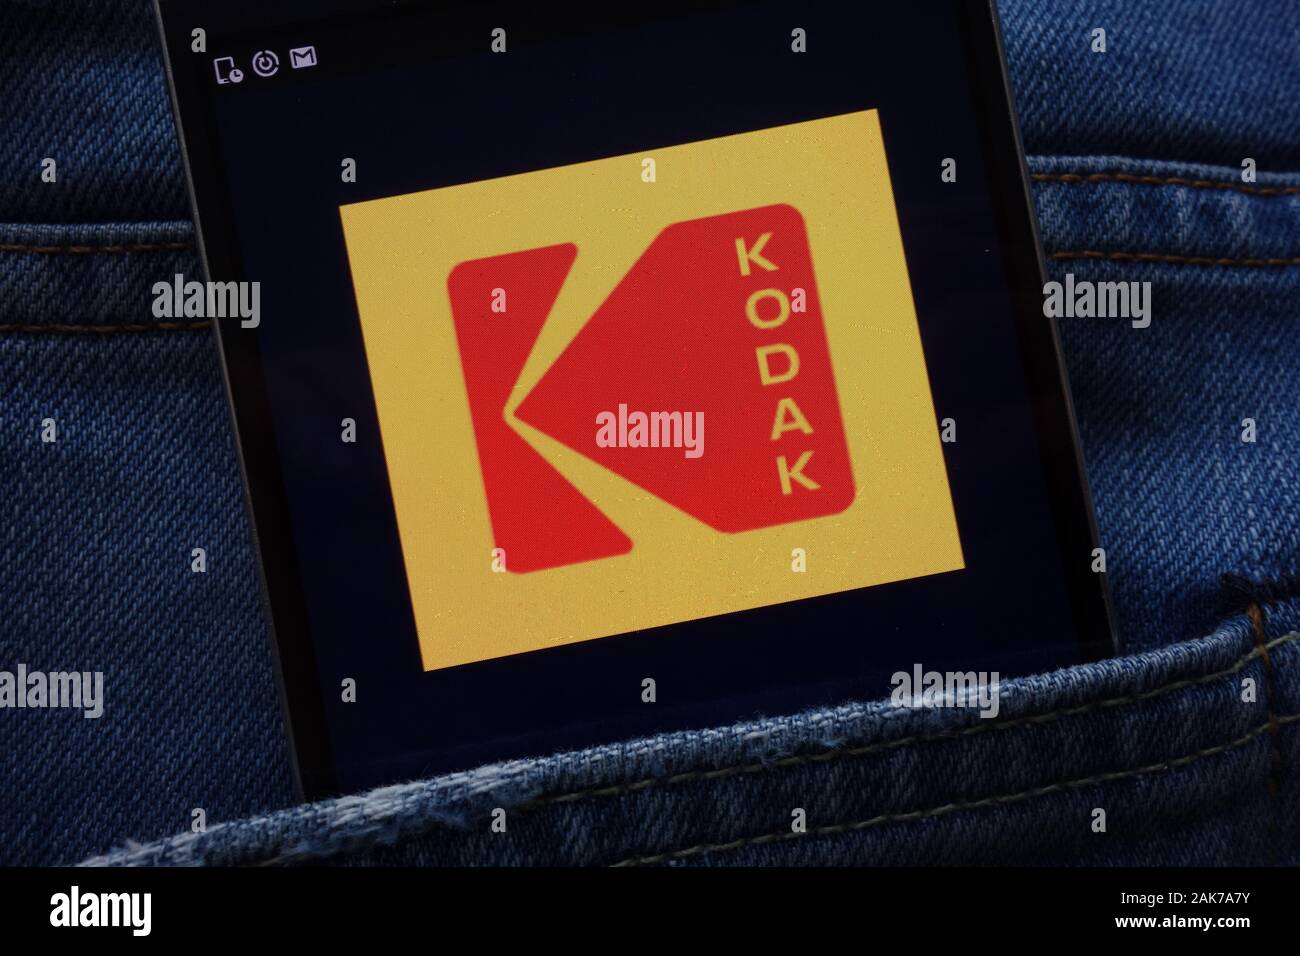 Eastman Kodak Company site web affiché sur smartphone caché dans la poche de jeans Banque D'Images